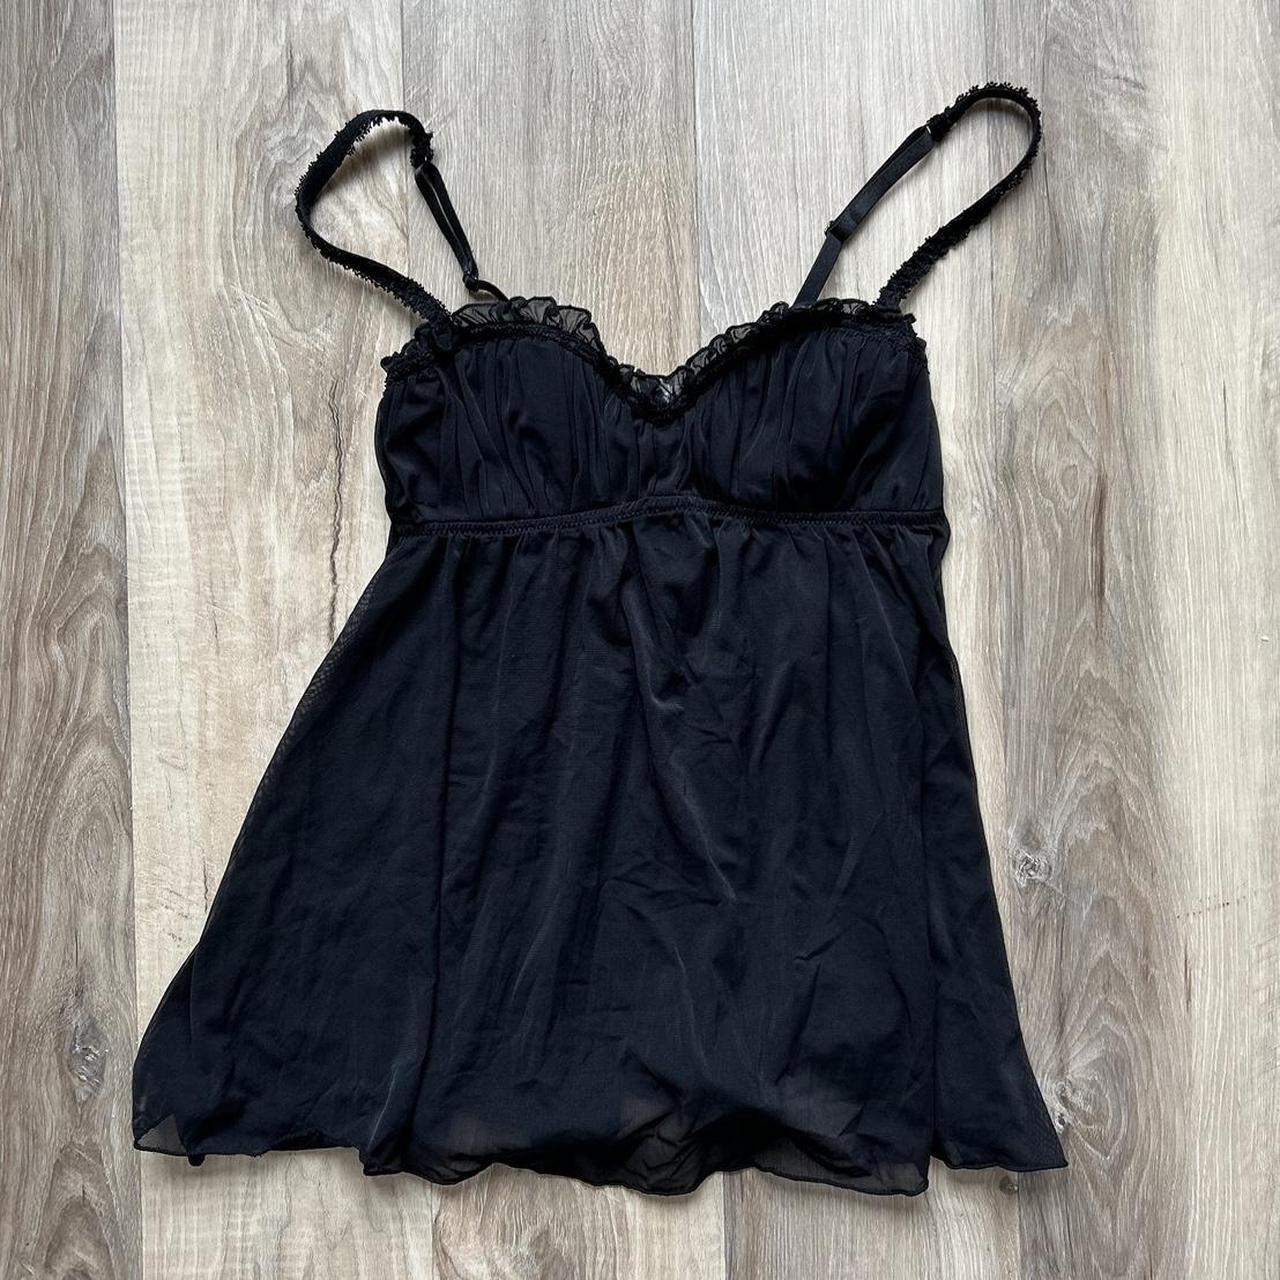 vintage early 2000s black sheer lingerie top size... - Depop